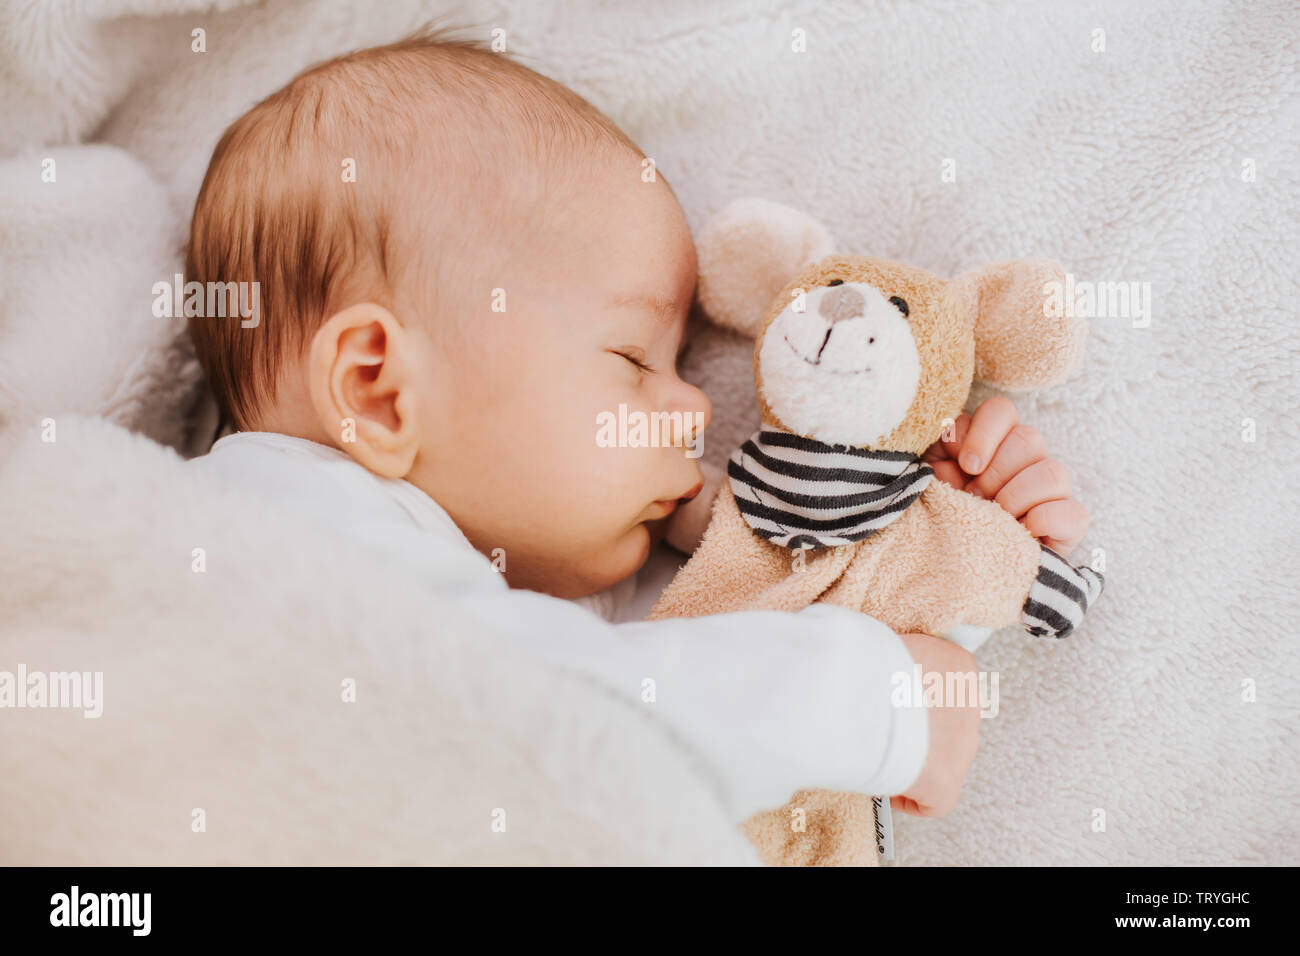 baby sleeping with stuffed toy Stock Photo